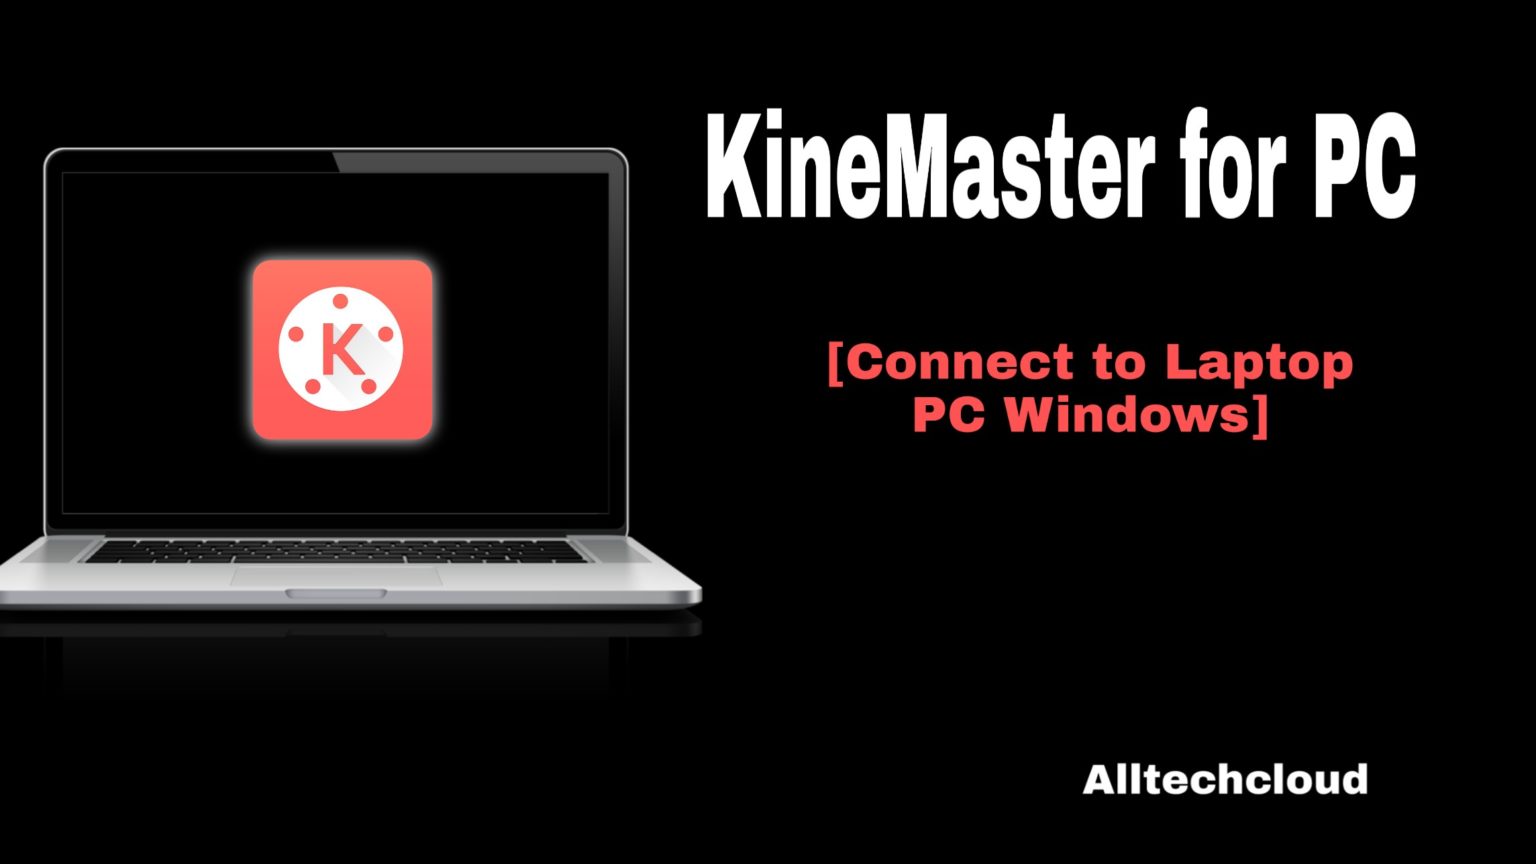 kinemaster windows 10 64 bit download